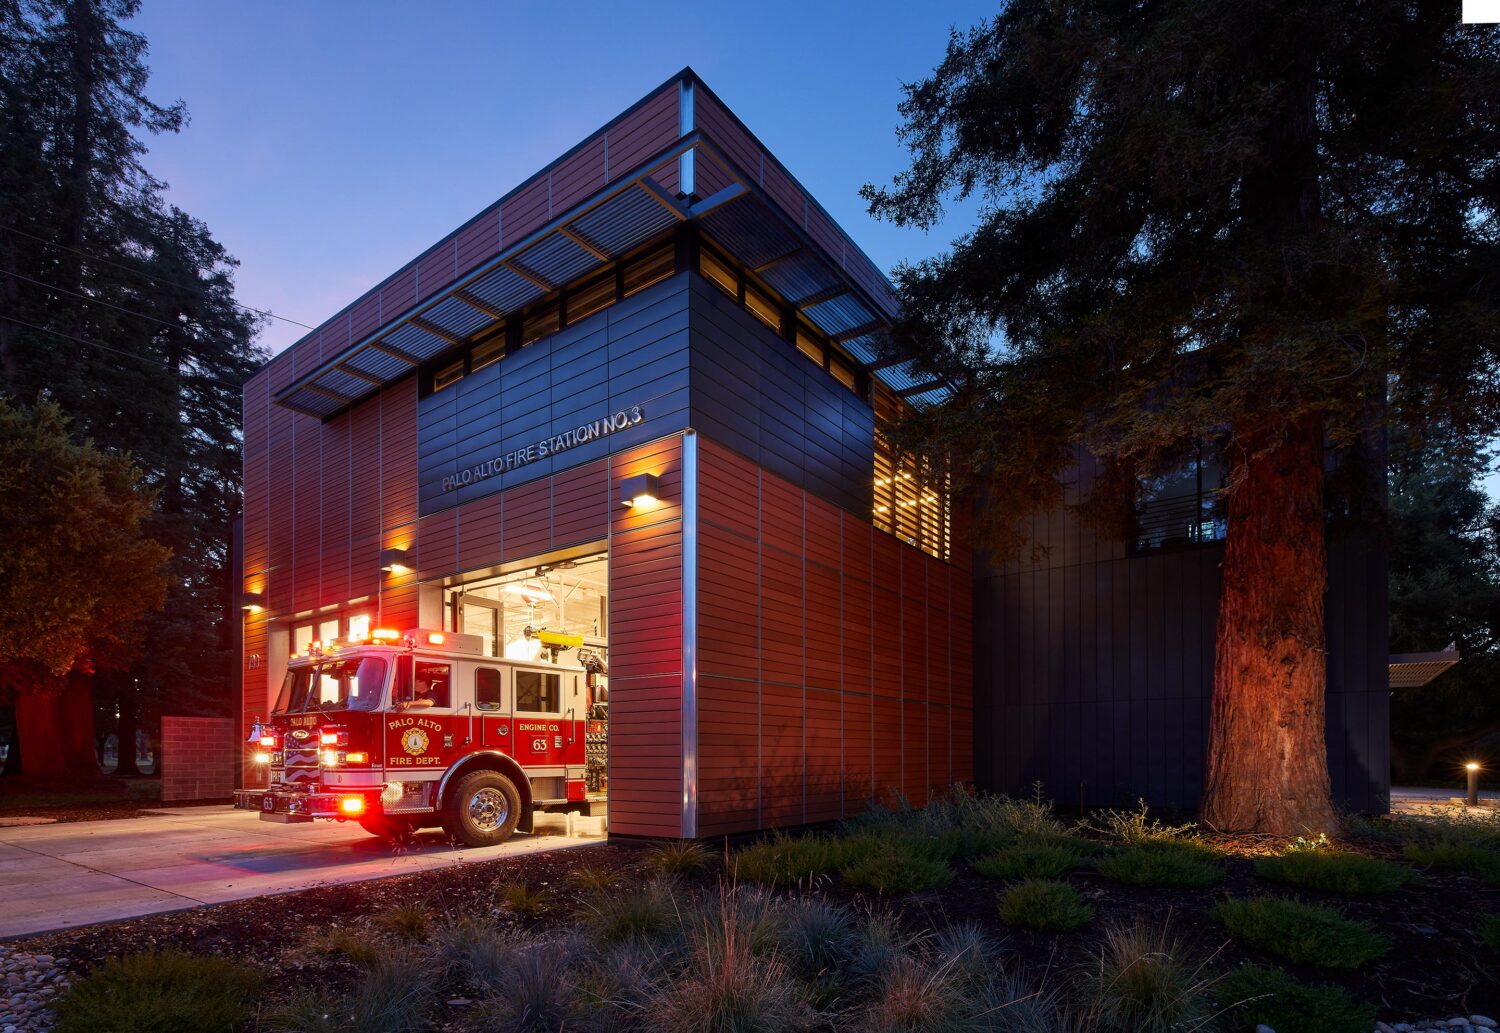 Palo Alto Fire Station No. 3